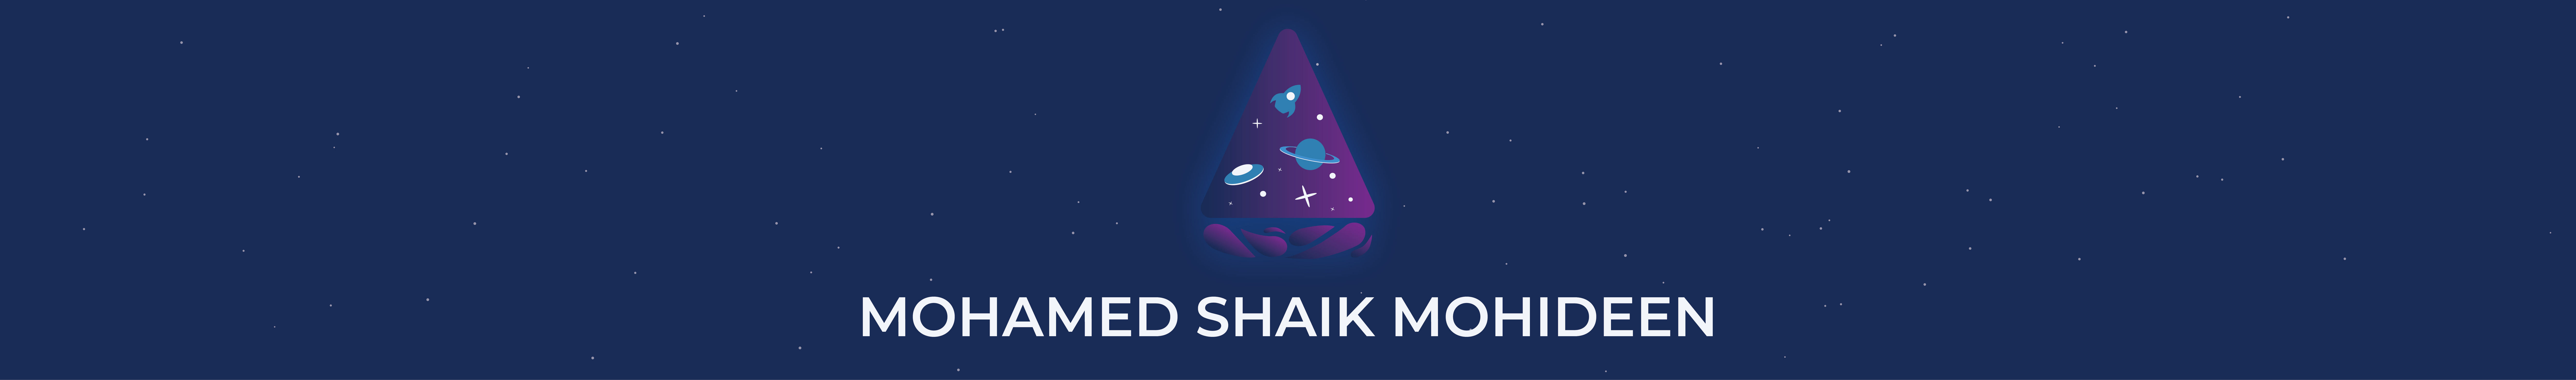 Shaik Mohideen's profile banner